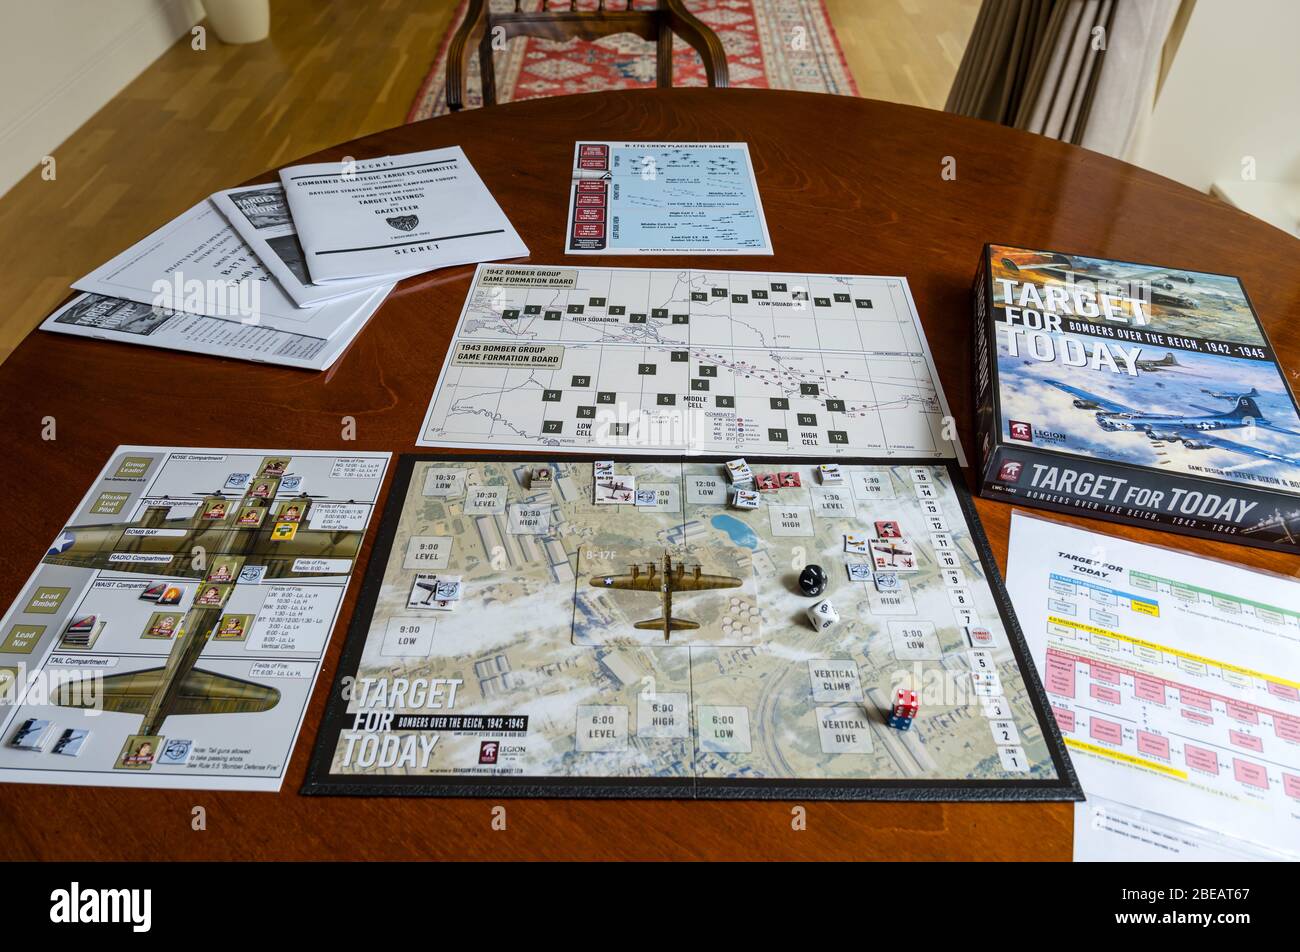 Ein Spieler Solitaire Krieg Brettspiel namens Target for Today auf Esstisch  in Hause, Großbritannien Stockfotografie - Alamy